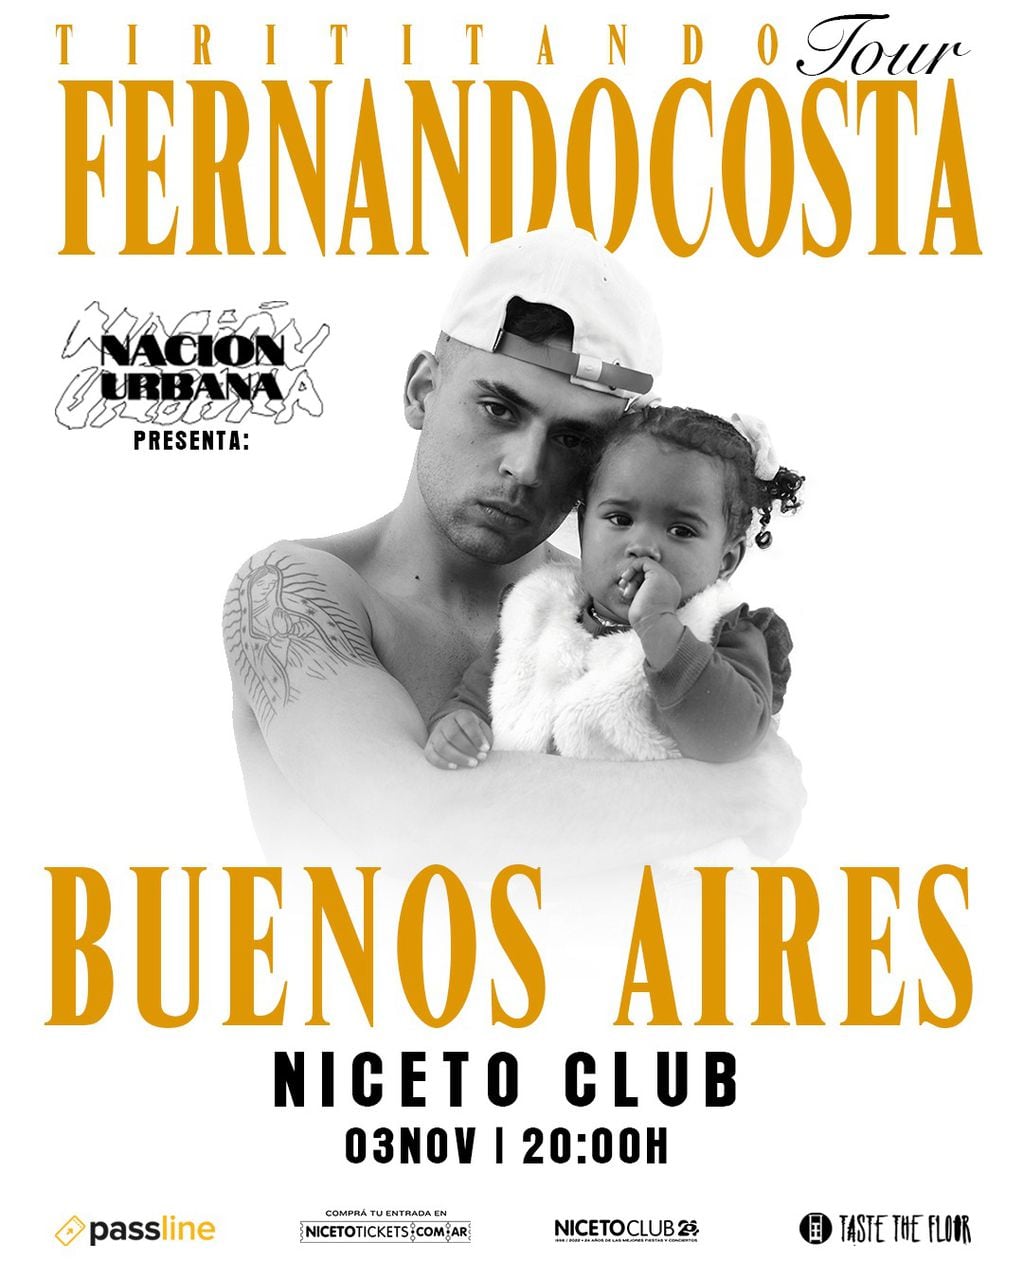 Fernandocosta se presenta en Niceto Club.